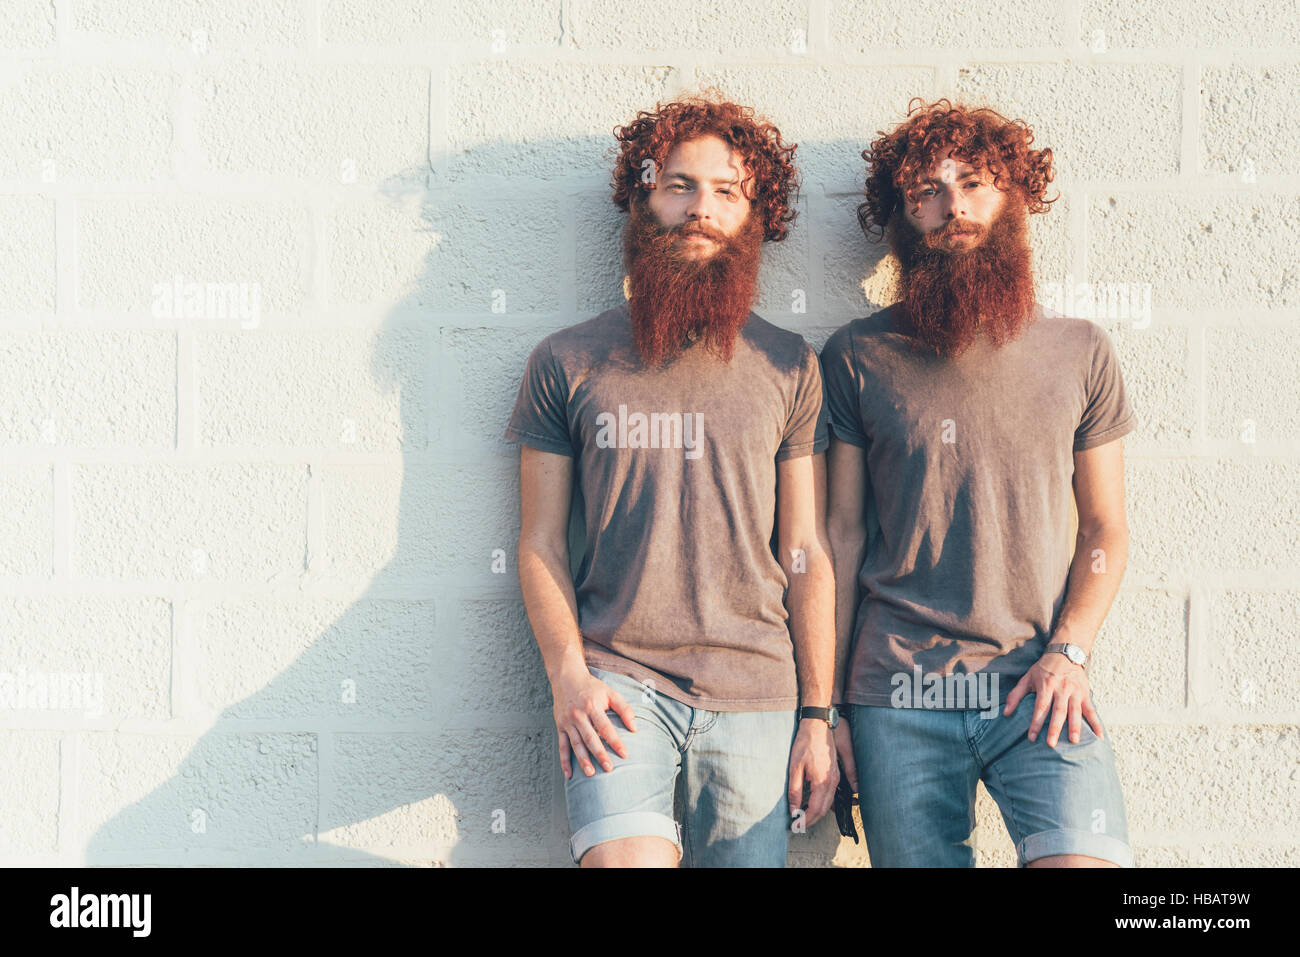 Ritratto di identico maschio adulto gemelli con i capelli rossi e le barbe contro la parete Foto Stock